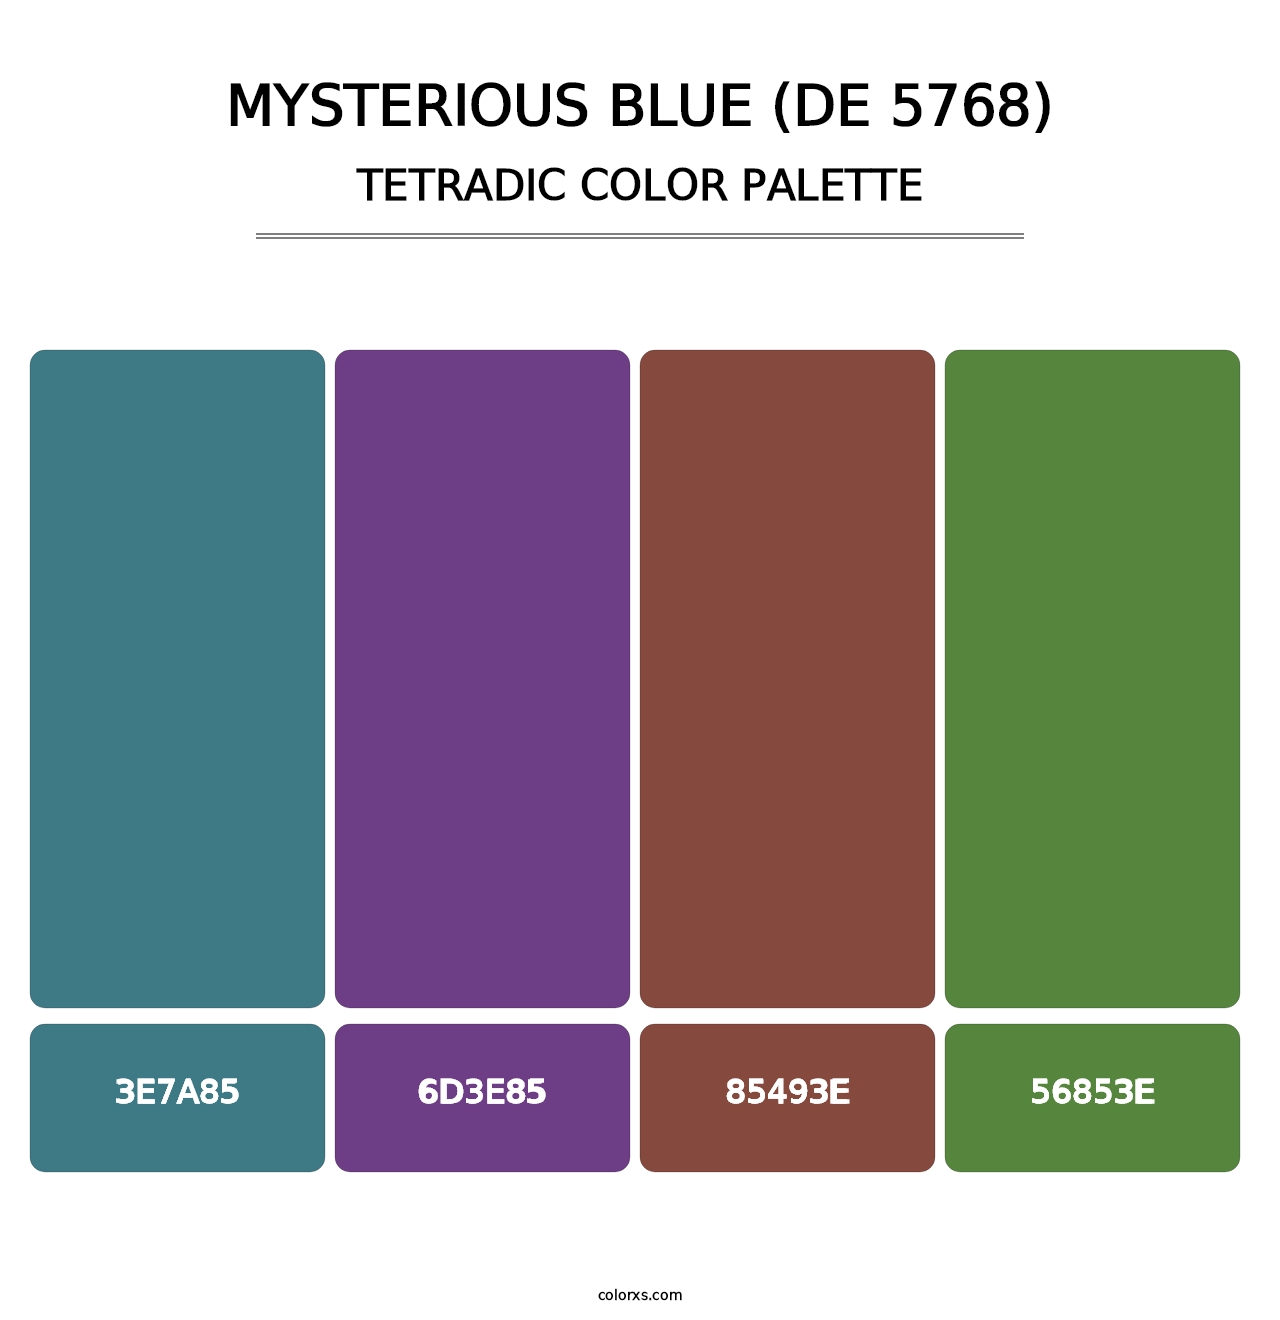 Mysterious Blue (DE 5768) - Tetradic Color Palette